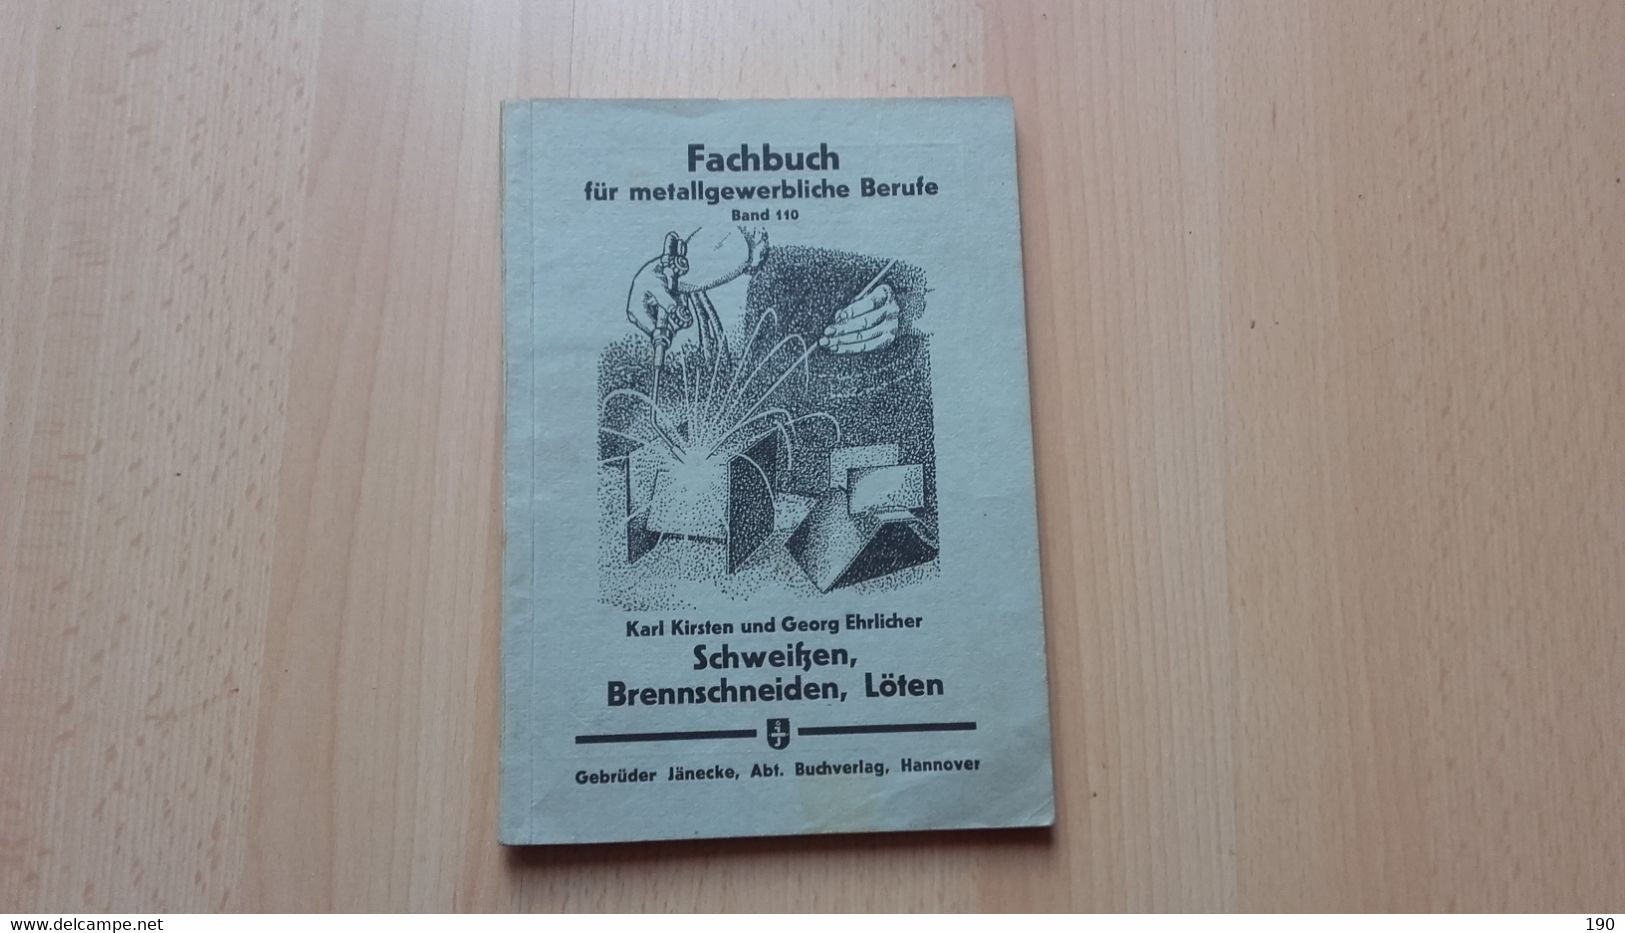 Fachbuch Fur Metallgewerbliche Berufe.Band 110.Karl Kirsten/Georg Ehrlicher:Schweitzen,Brennschneiden,Loten - Técnico